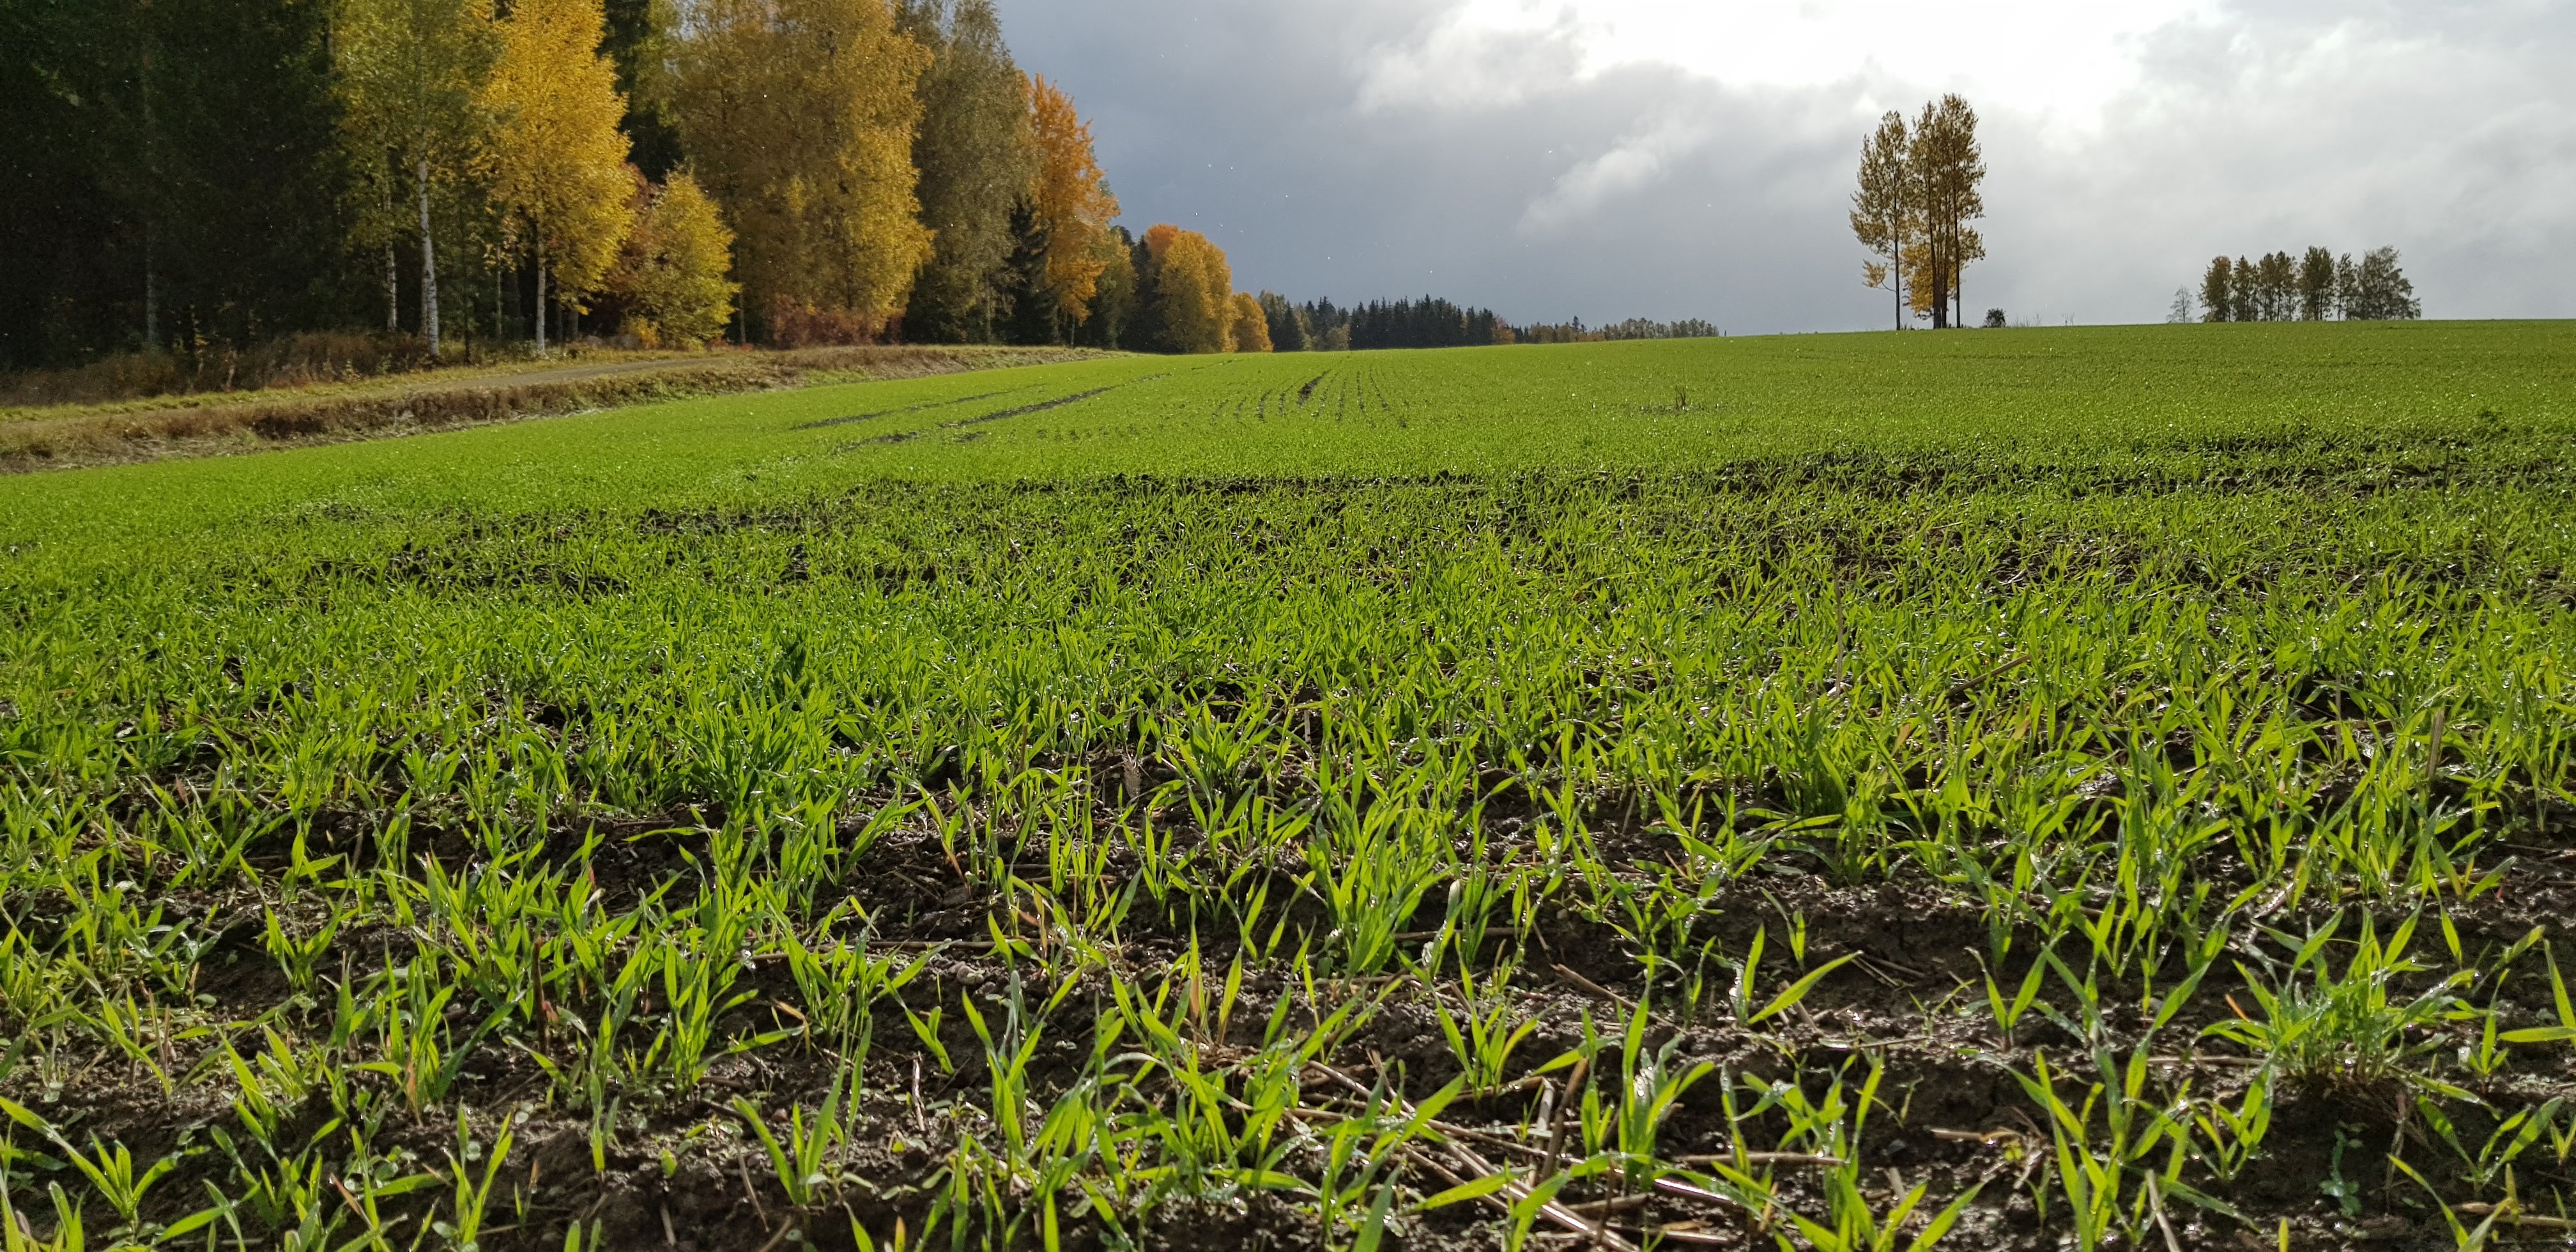 Bild 2. Höstsådda grödor så som höstråg är utmärkta alternativ som växttäcke vintertid. Bild: Eija Hagelberg.